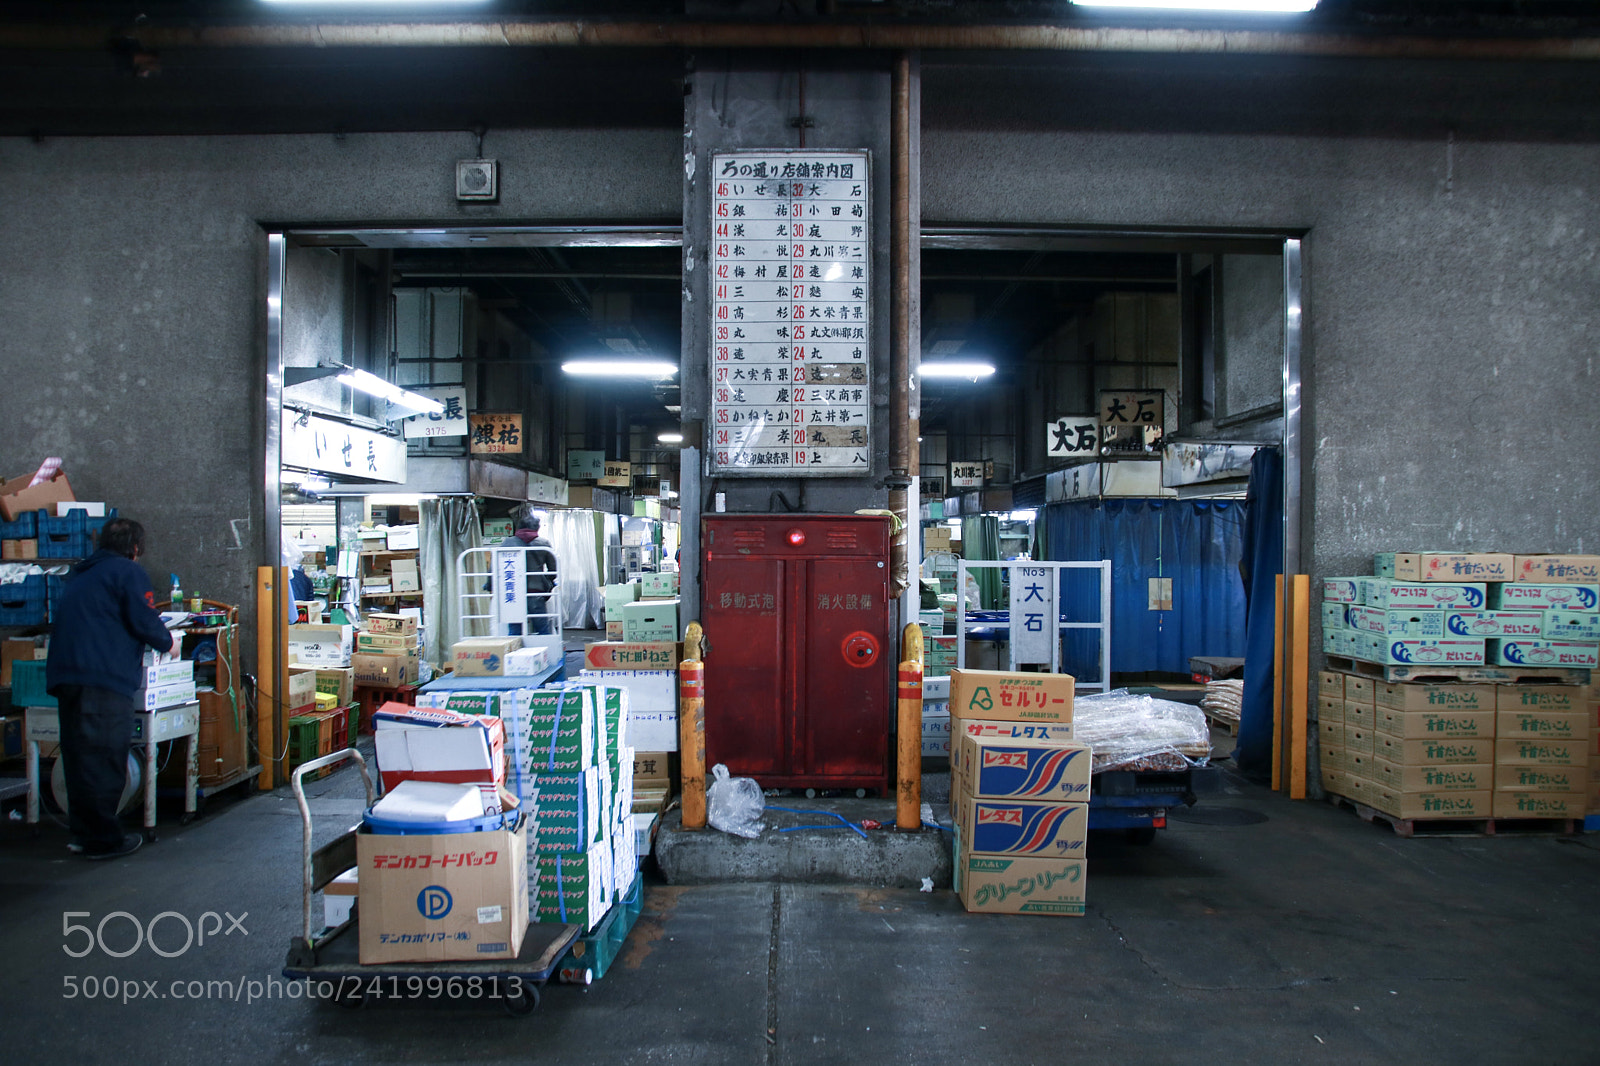 Canon EOS 760D (EOS Rebel T6s / EOS 8000D) sample photo. In tsukiji market photography